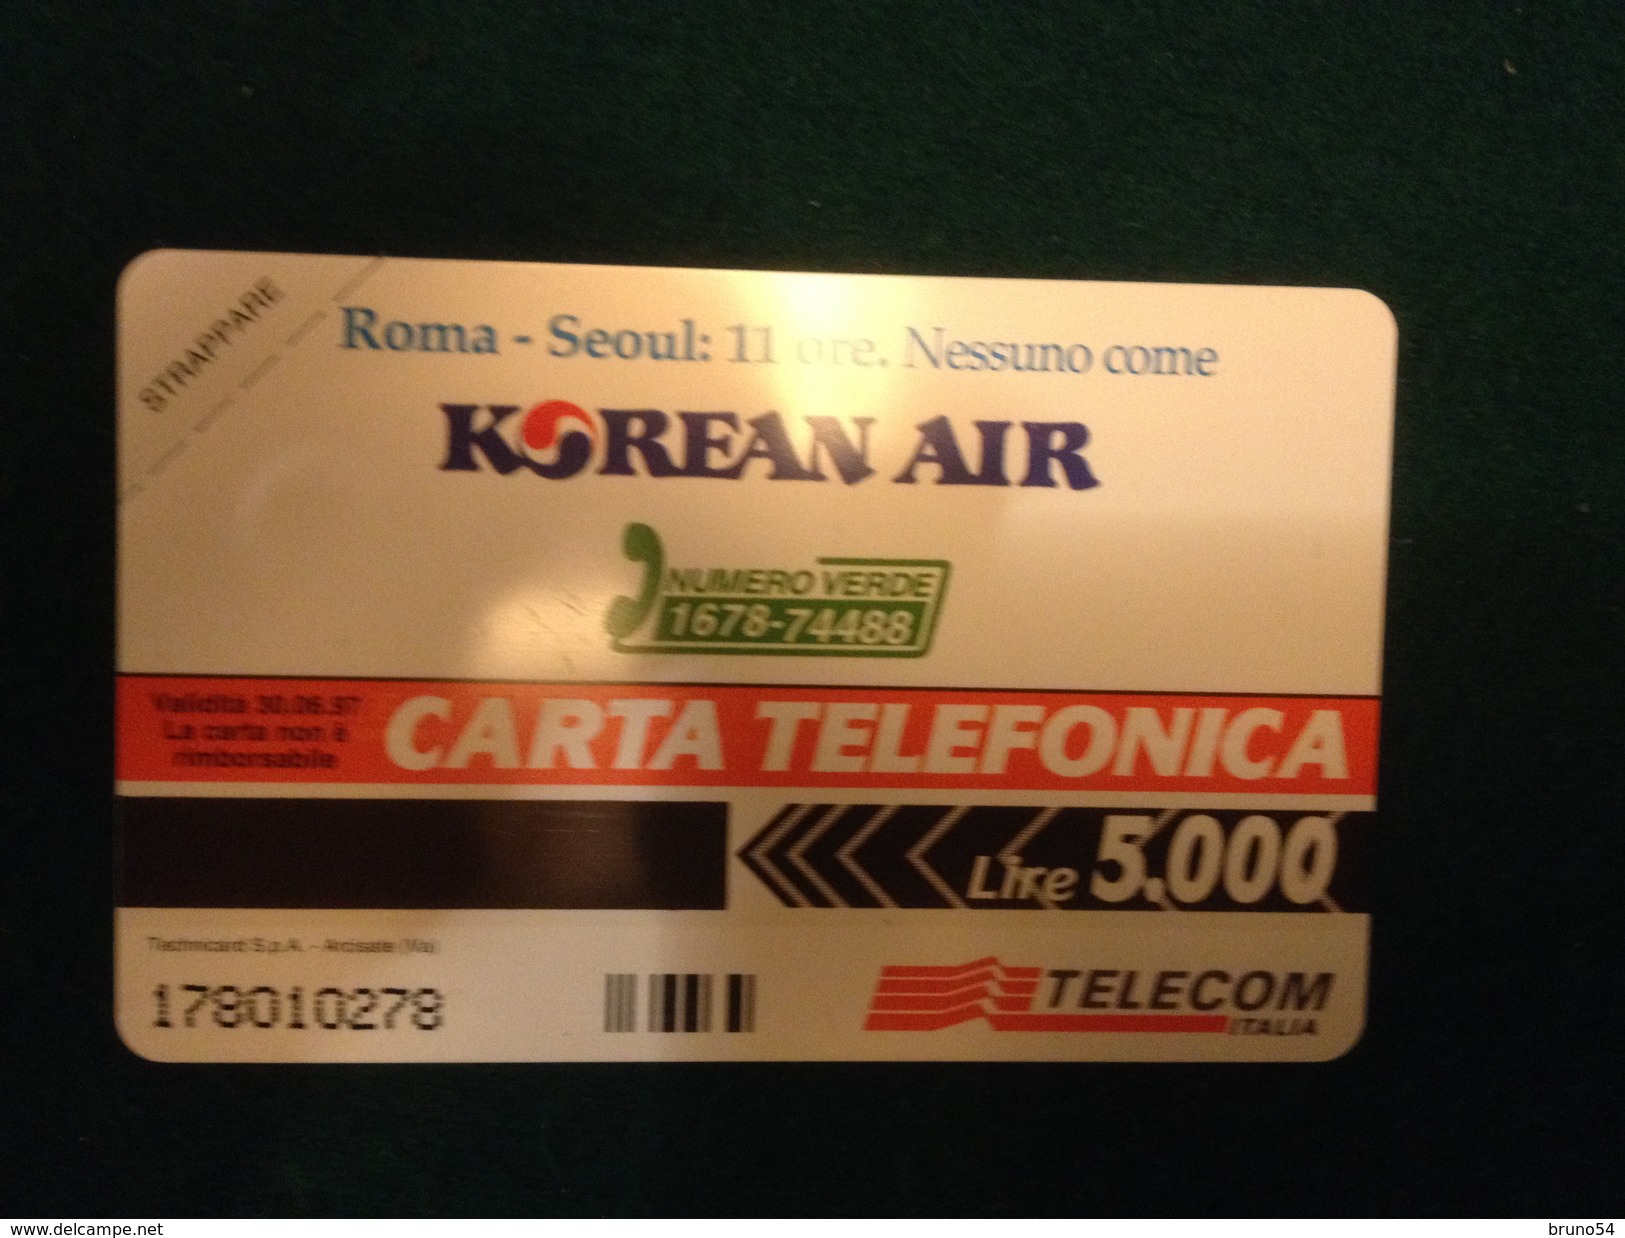 Scheda Telefonica Golden 281 Nuova Da Lire 5000 Korean Air  Roma Seoul  11 Ore Airplane Jumbo 747 Tiratura 14.000 - Private New Editions